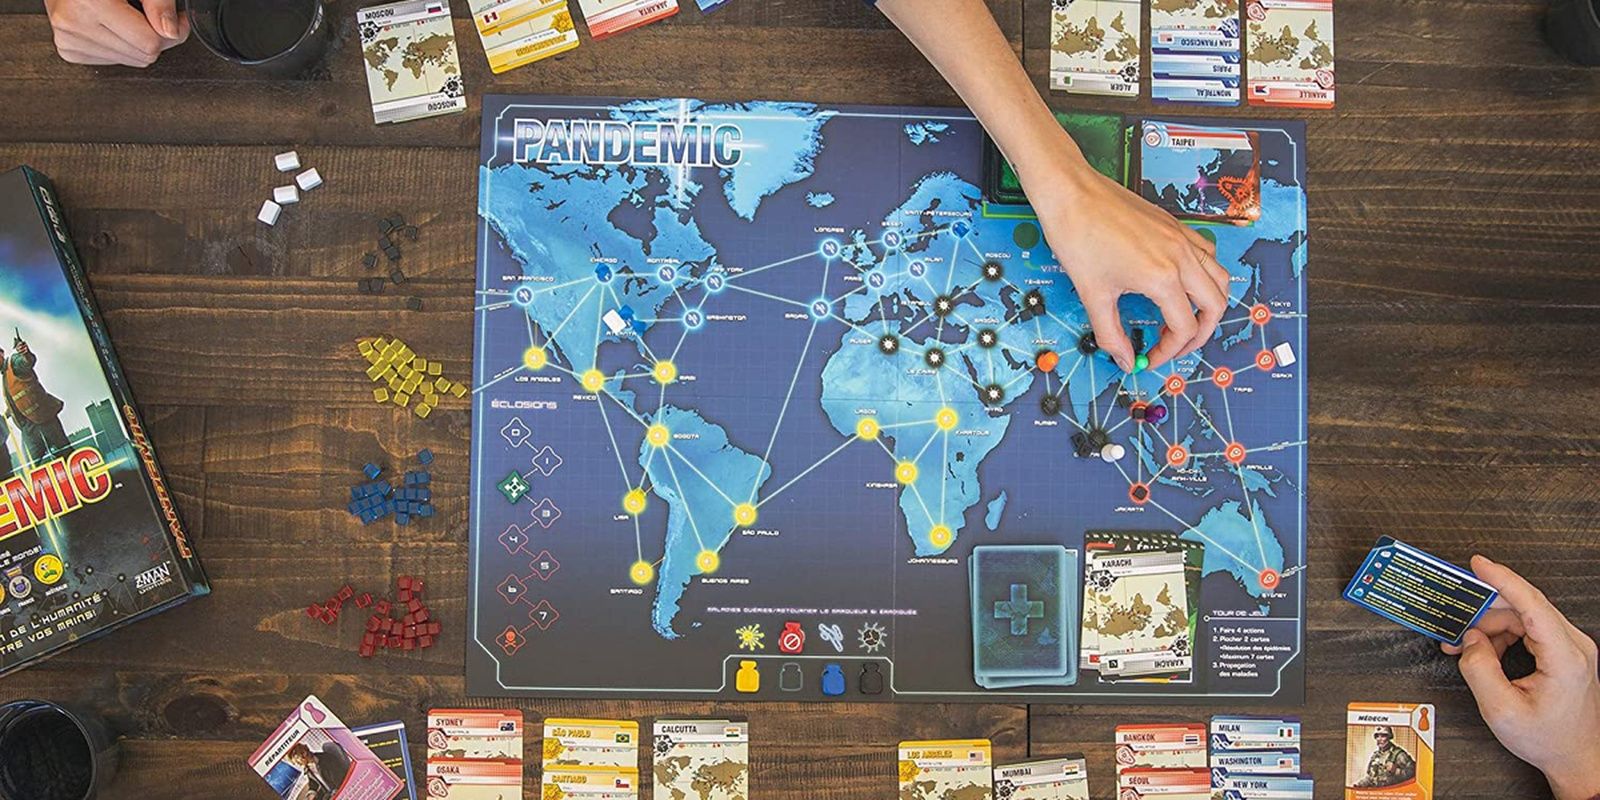 Pandemic game in progress